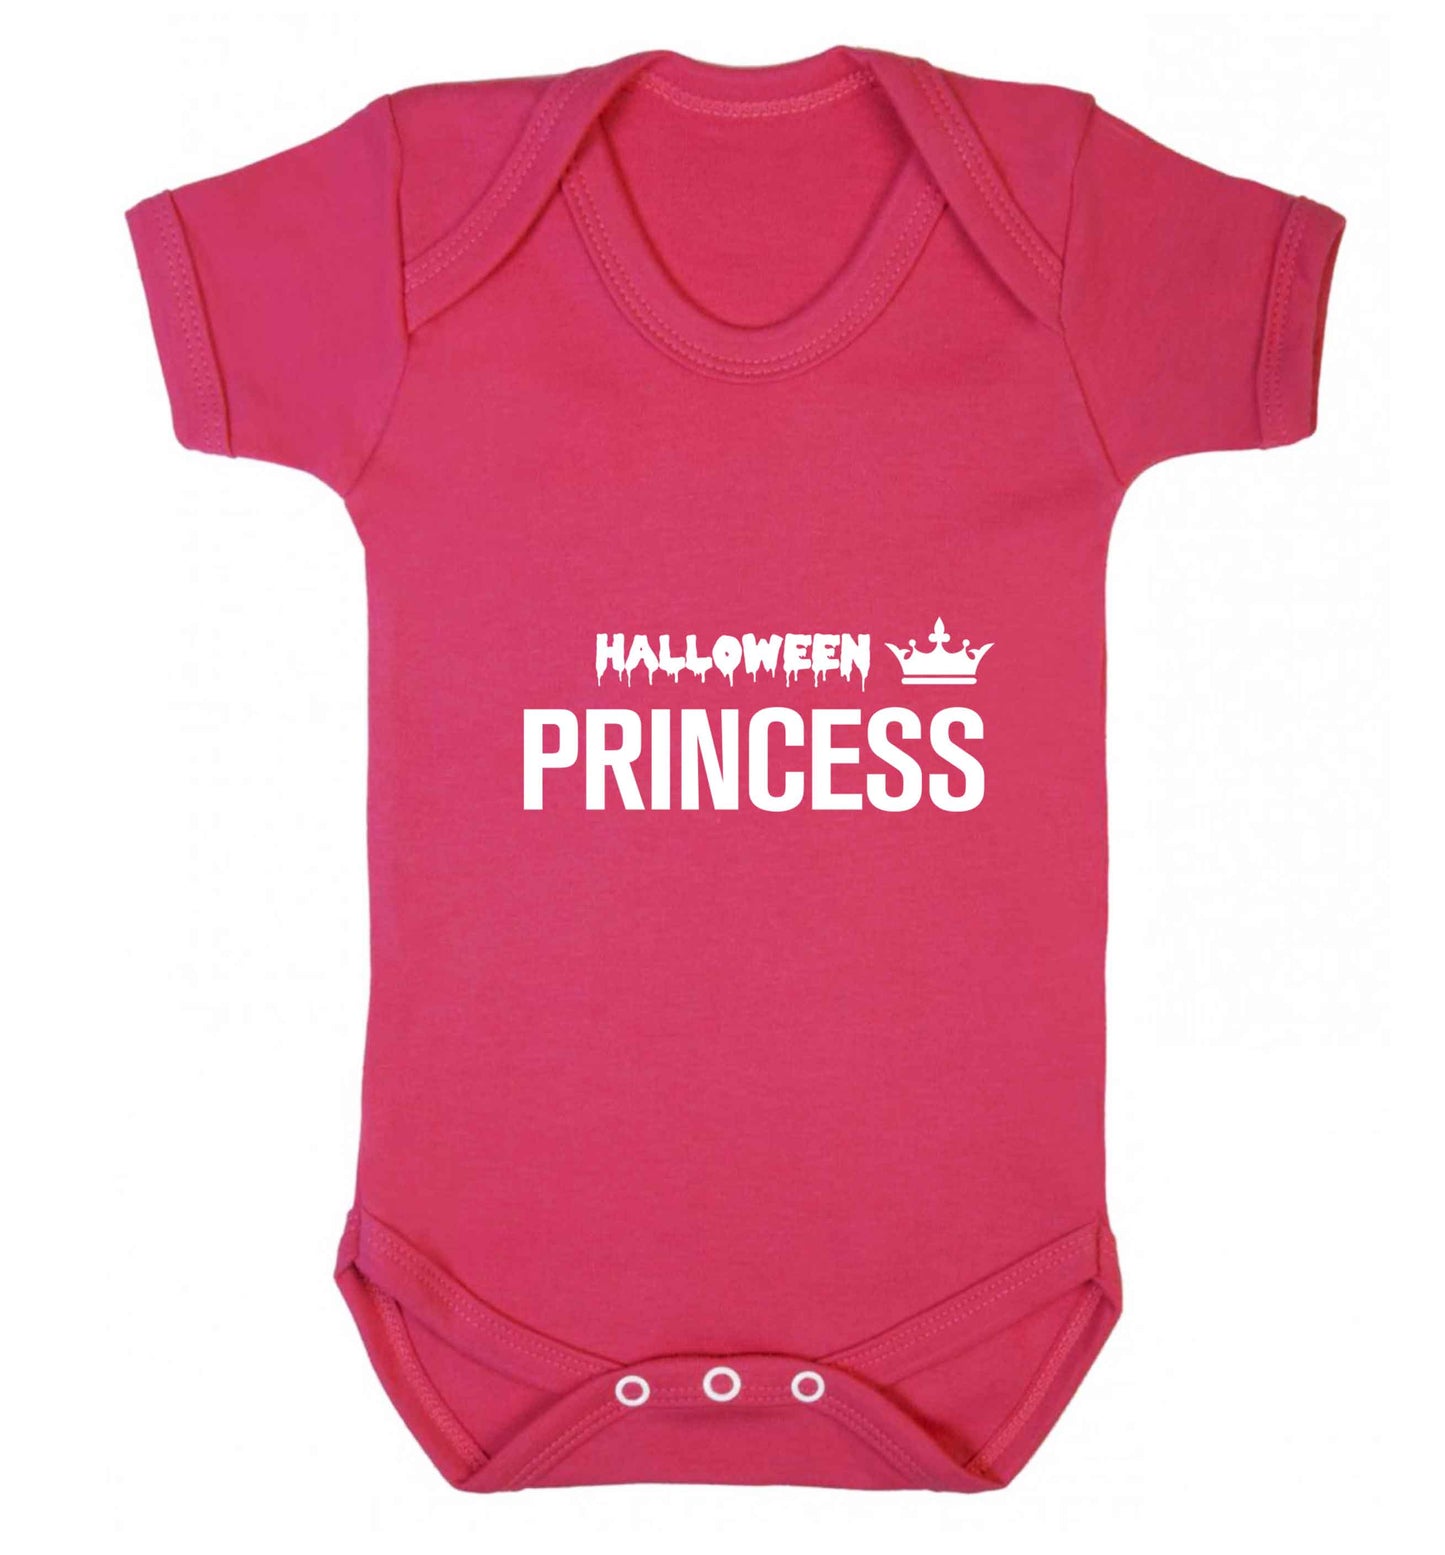 Halloween princess baby vest dark pink 18-24 months